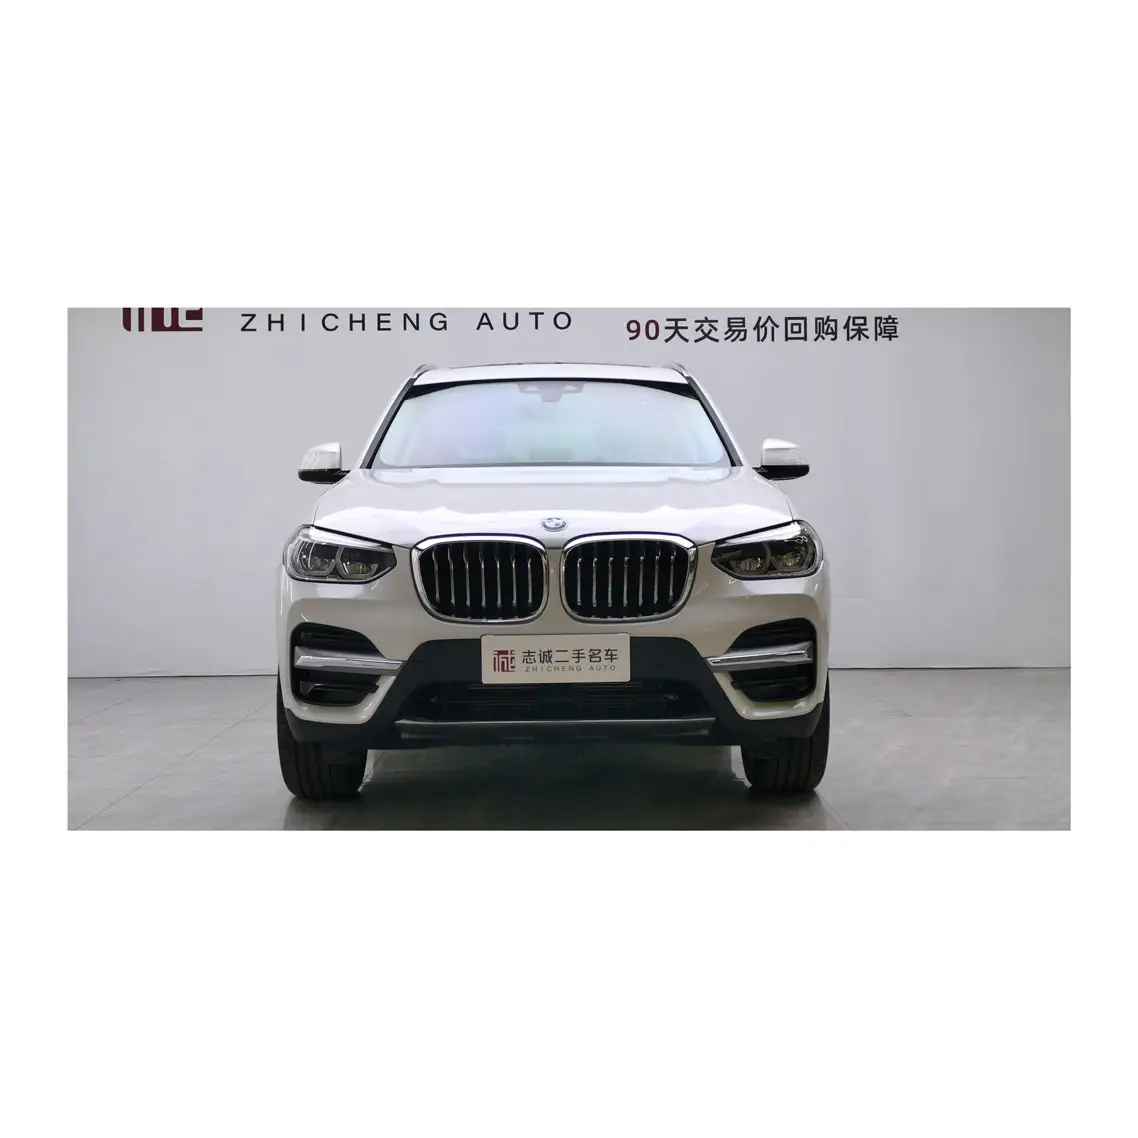 BMW X3 SUV auto di seconda mano lussuosa Suv Bmw X3 2021 auto usate vendita calda Sport AWD automatico (deposito)